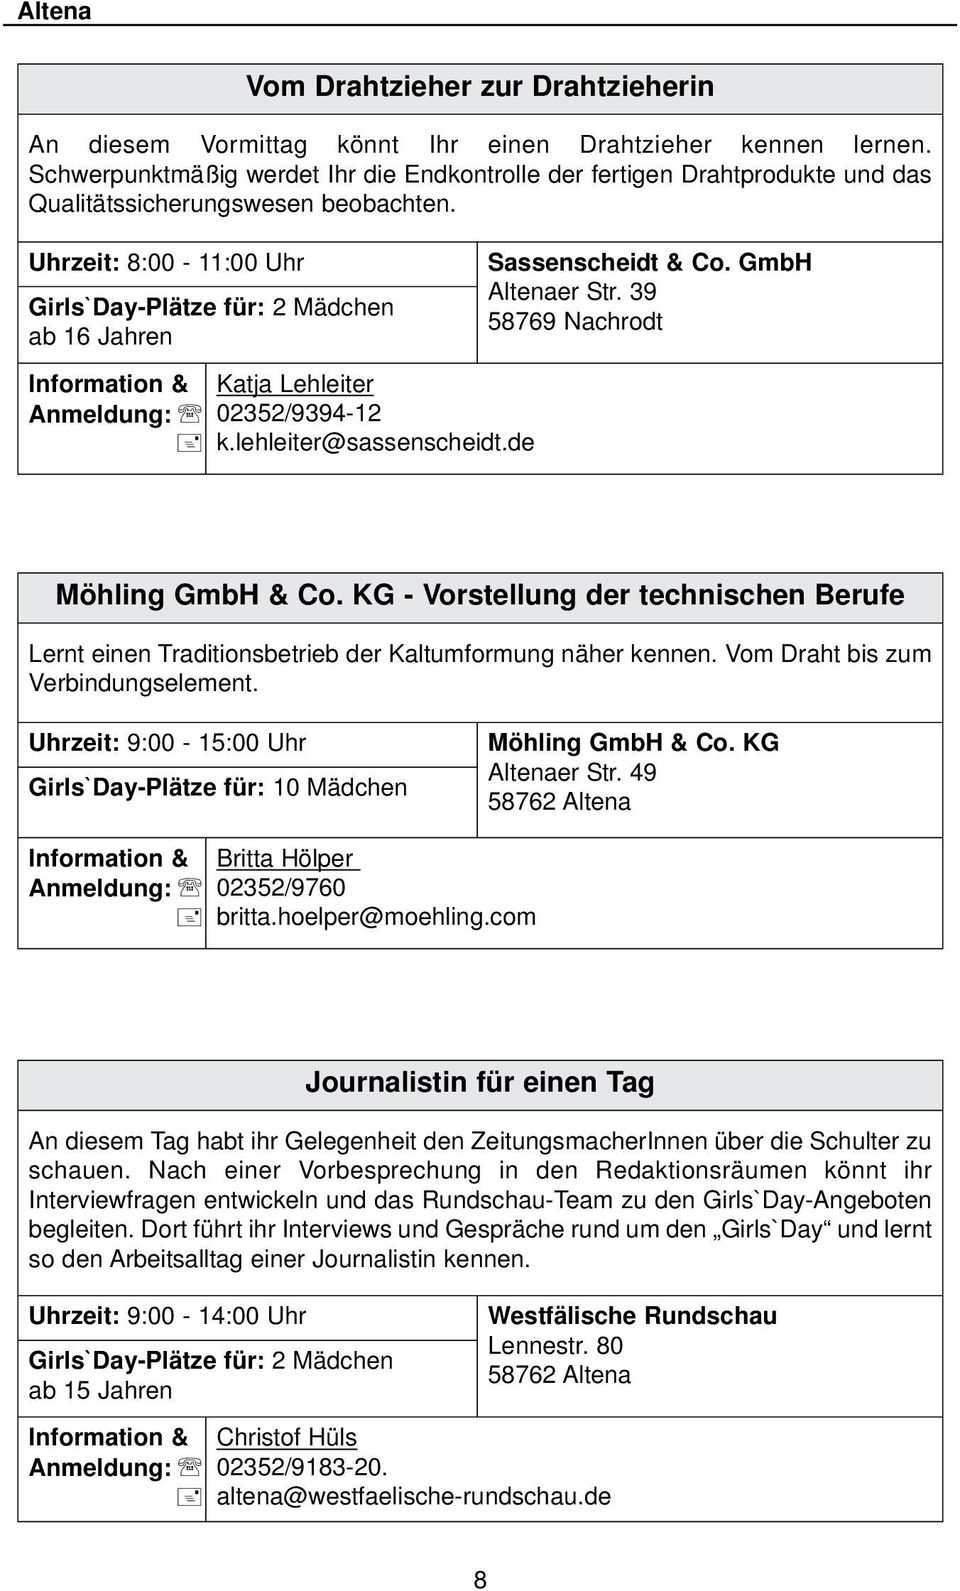 Uhrzeit: 8:00-11:00 Uhr ab 16 Jahren Information & Katja Lehleiter Anmeldung: 02352/9394-12 k.lehleiter@sassenscheidt.de Sassenscheidt & Co. GmbH Altenaer Str. 39 58769 Nachrodt Möhling GmbH & Co.